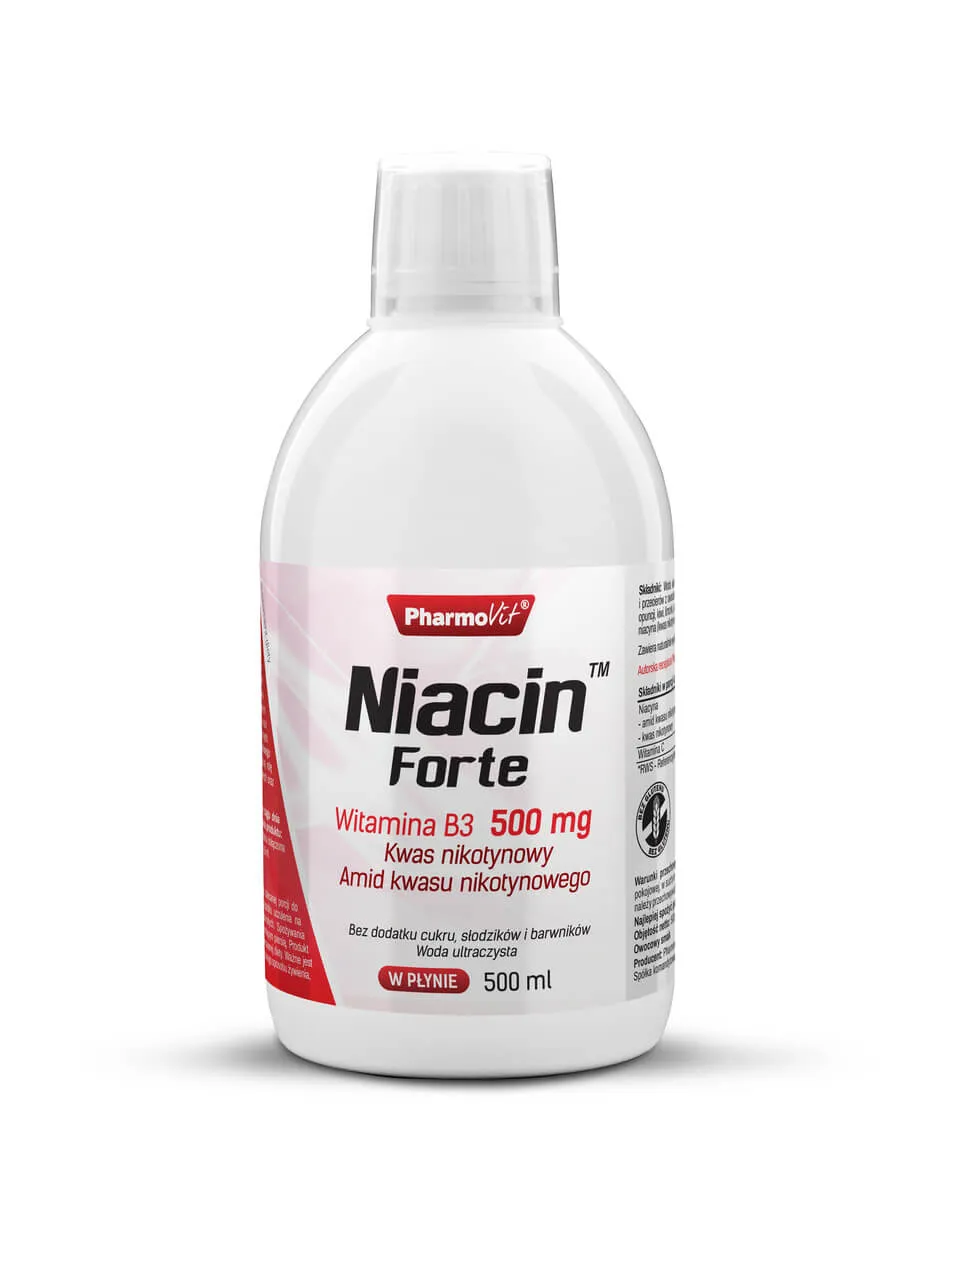 Niacin Forte Witamina B3 500 mg Pharmovit, suplement diety, 500 ml